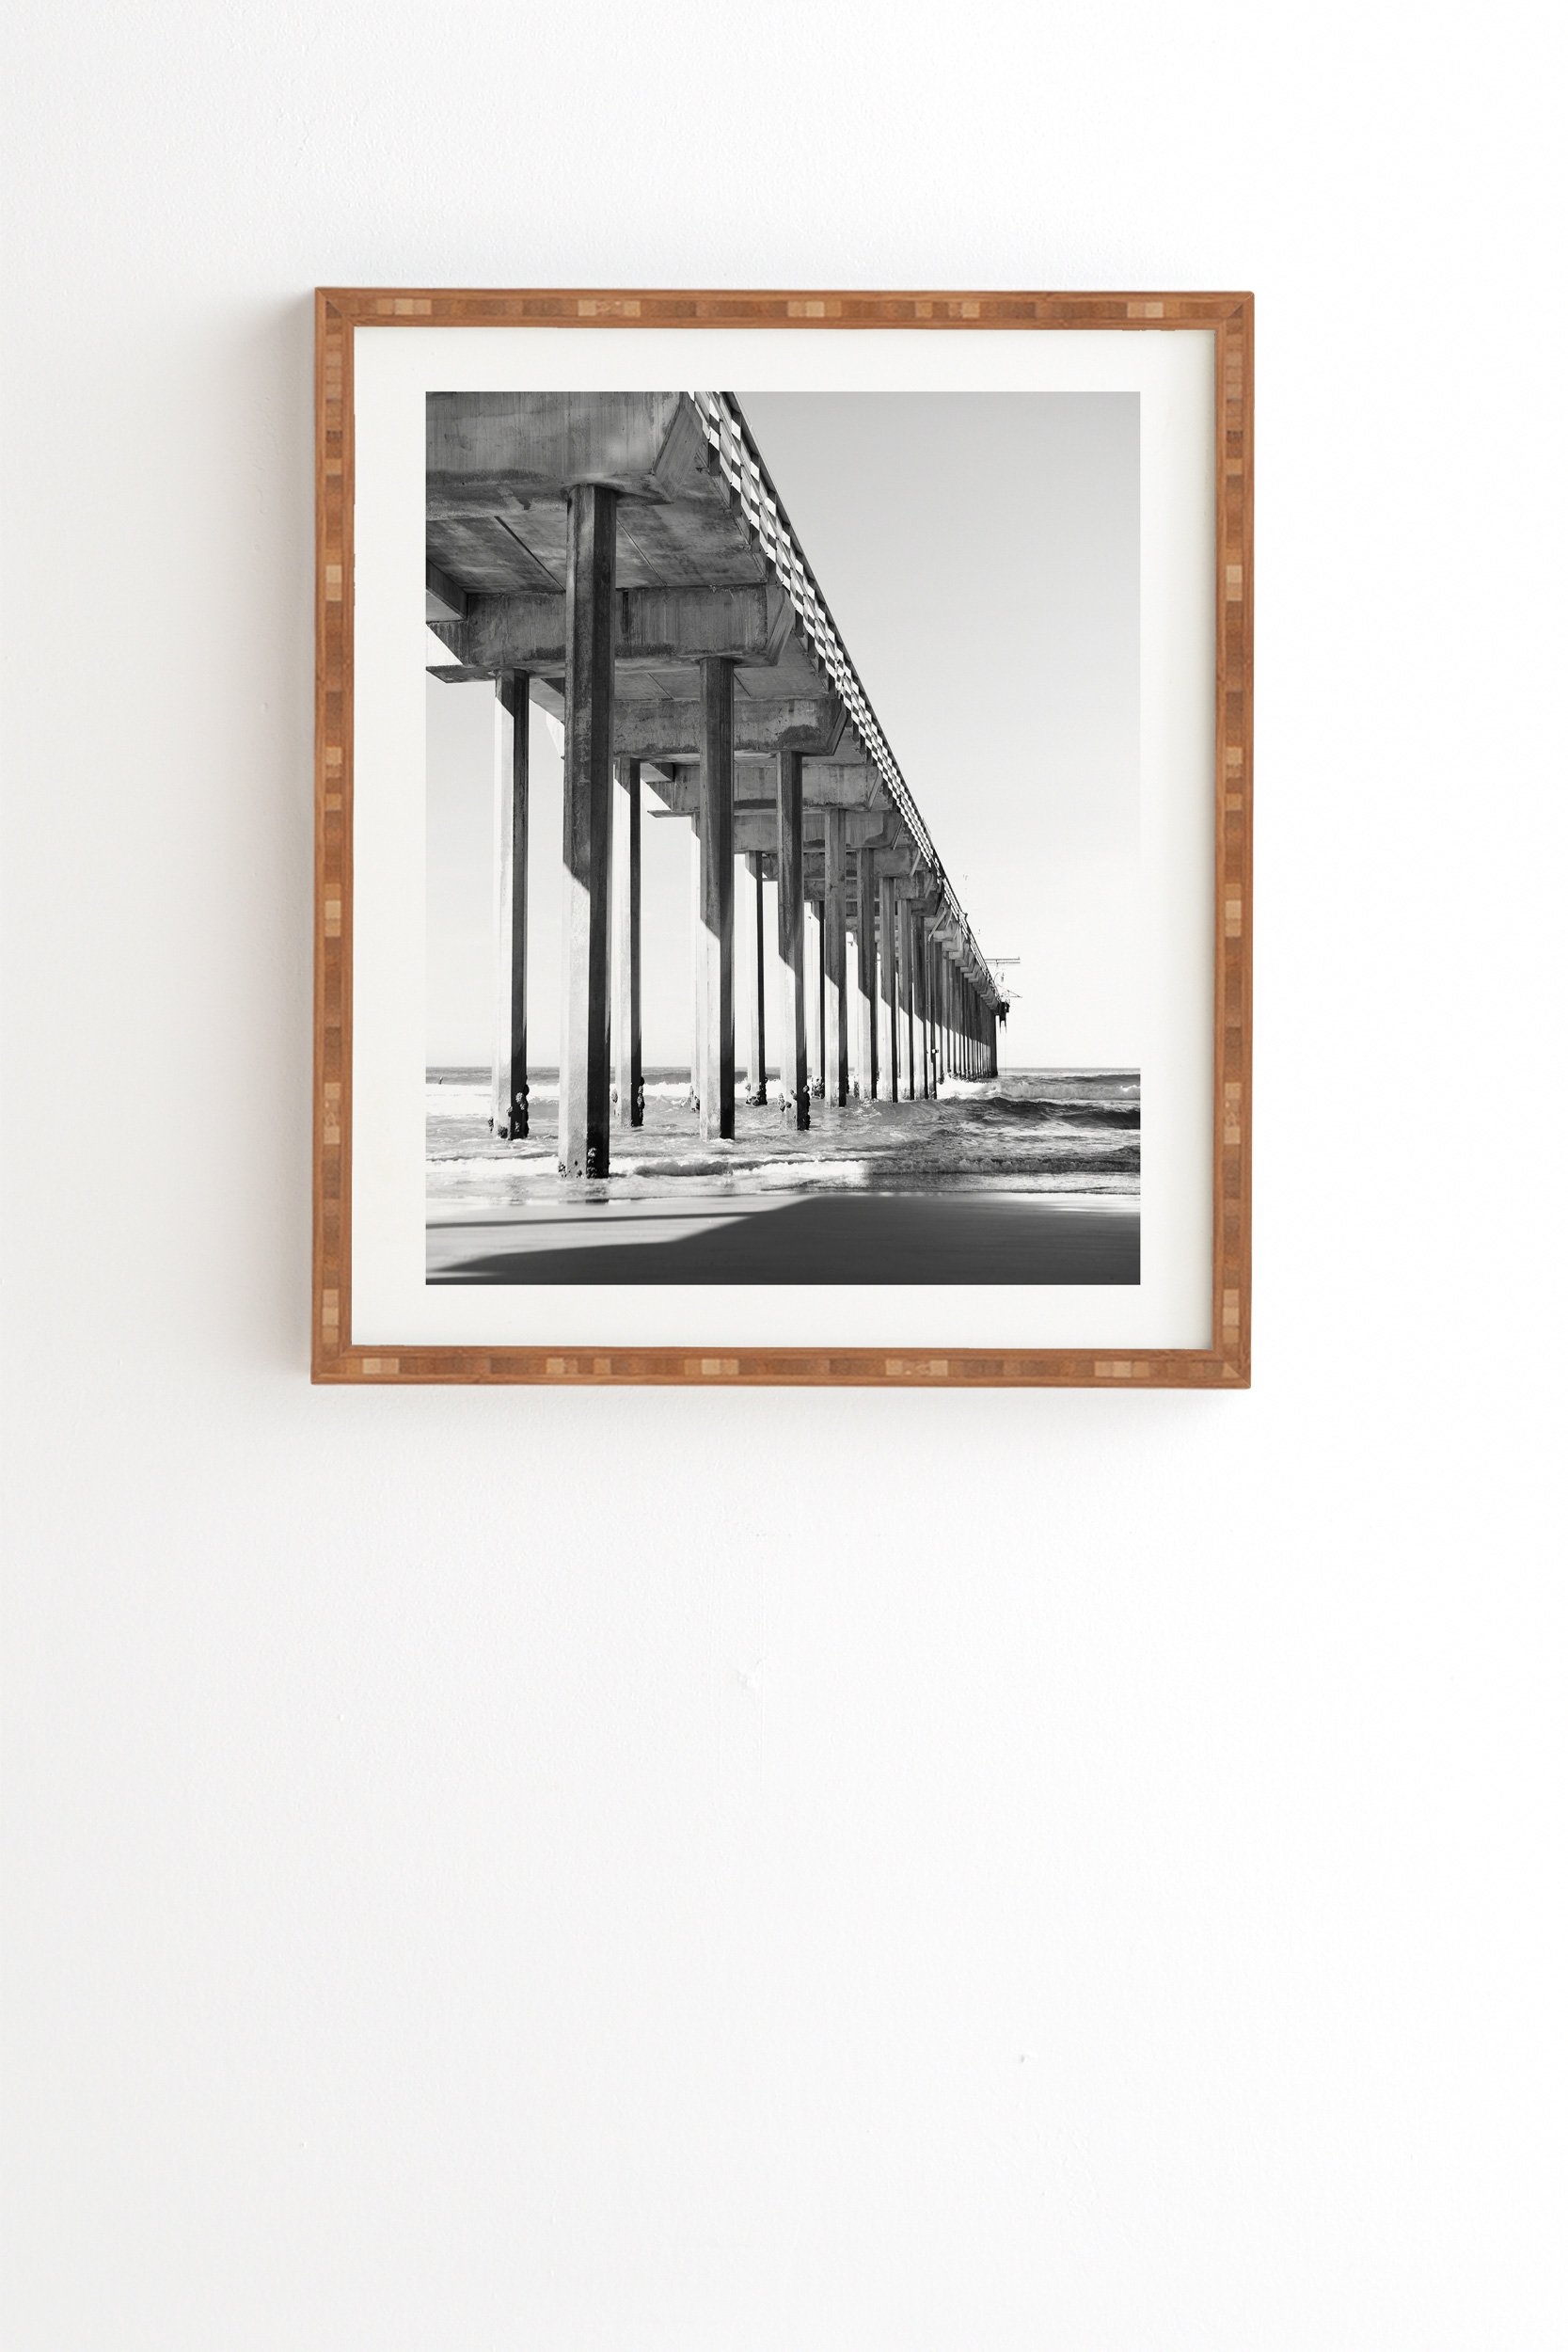 Bree Madden The Pier Framed Wall Art - 20" x 20" - Image 1